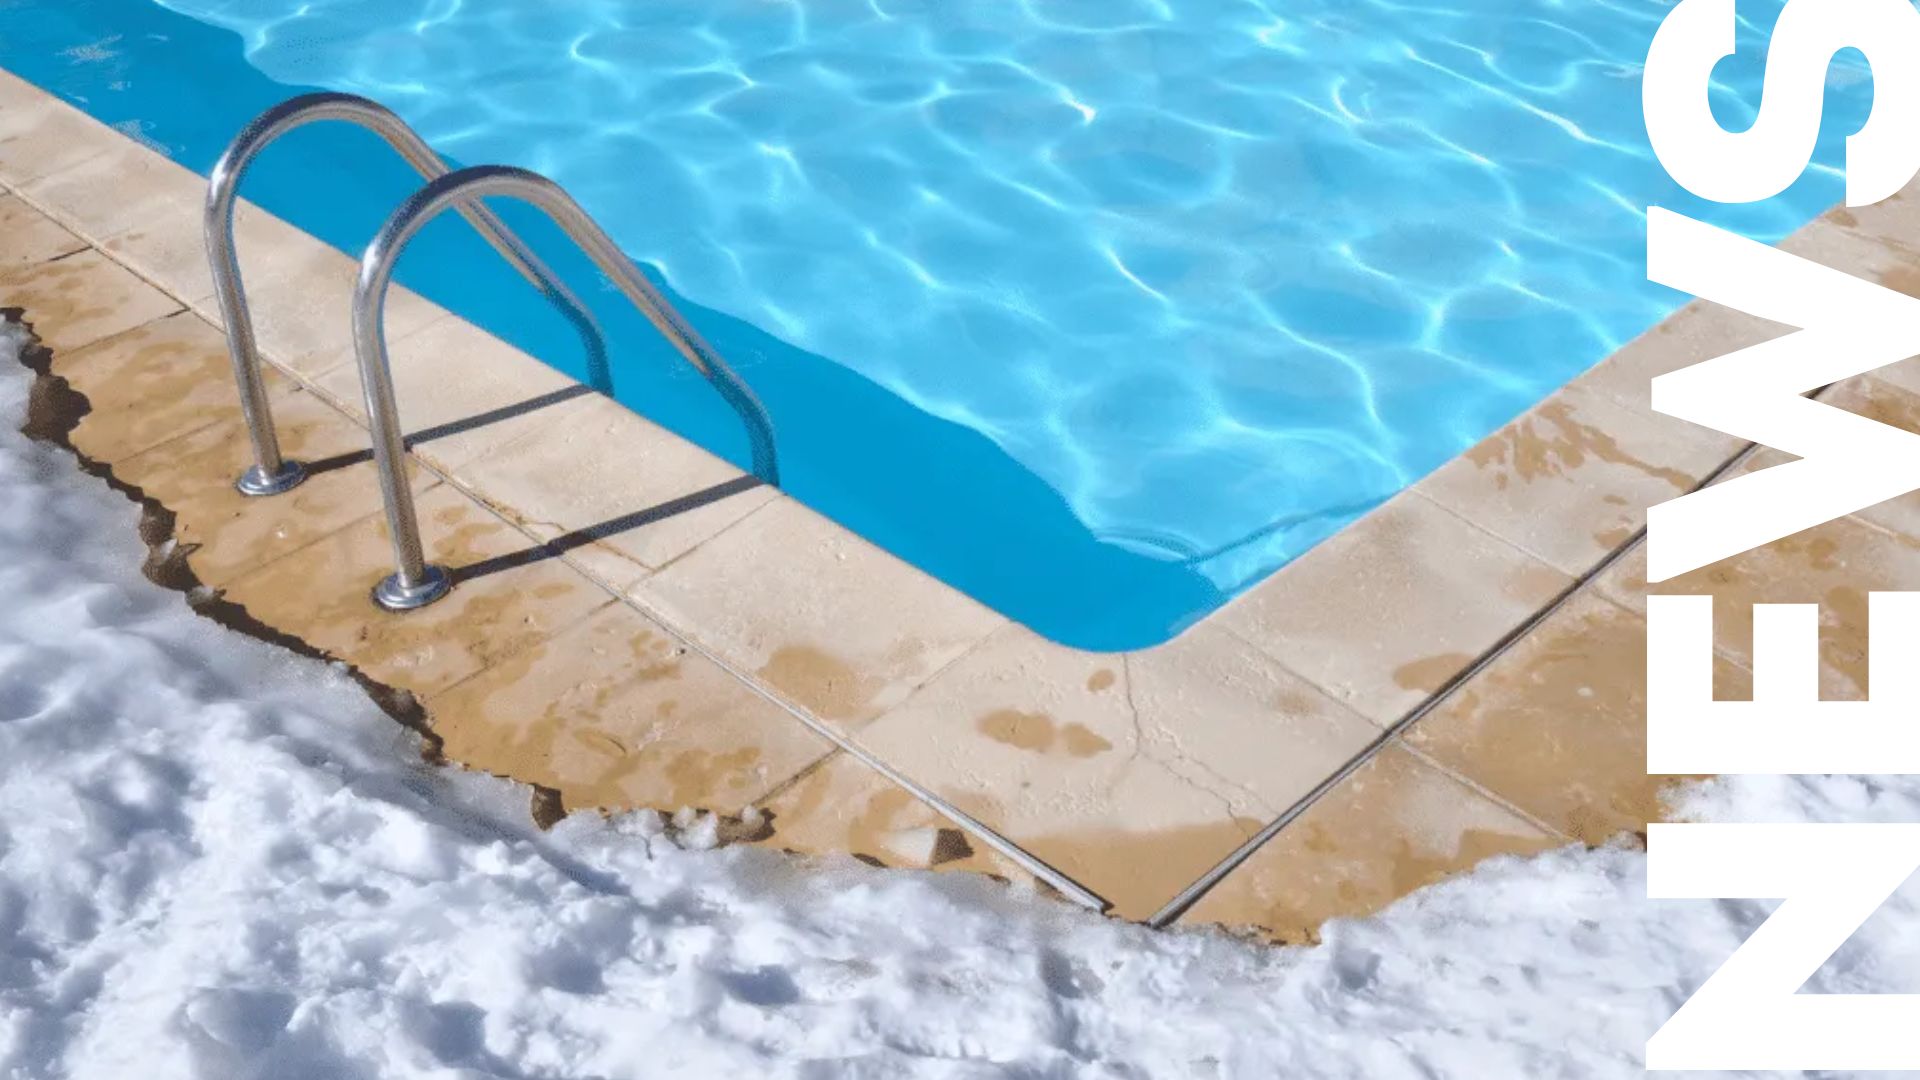 Invernaje de la piscina – dos formas de hacerlo